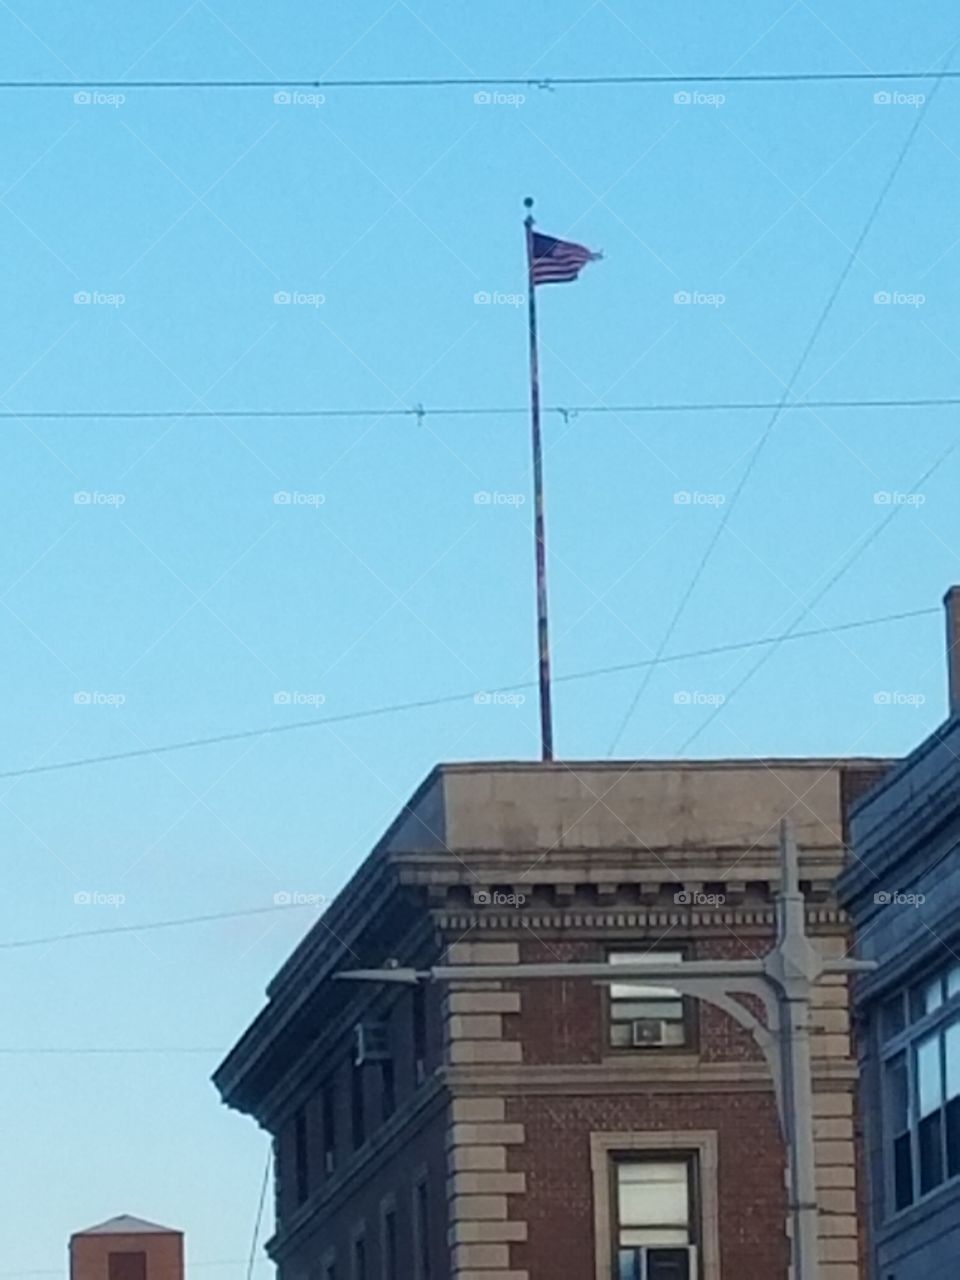 flag pole